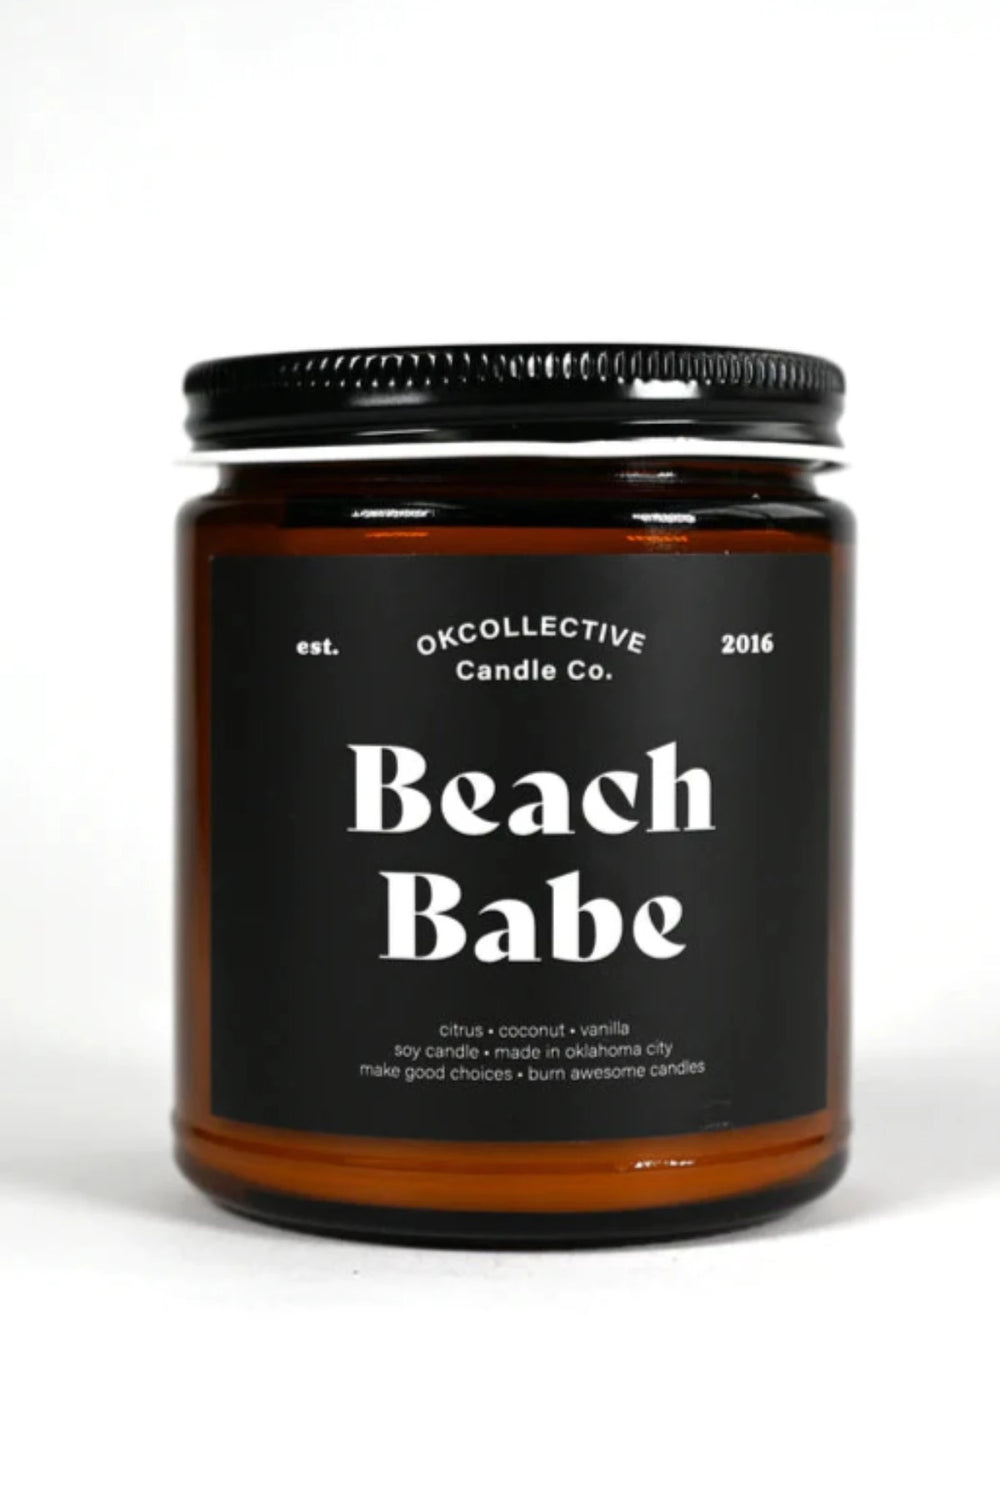 BEACH BABE Soy Candle - 8oz. OKcollective Candle Co. JAYDEN P BOUTIQUE